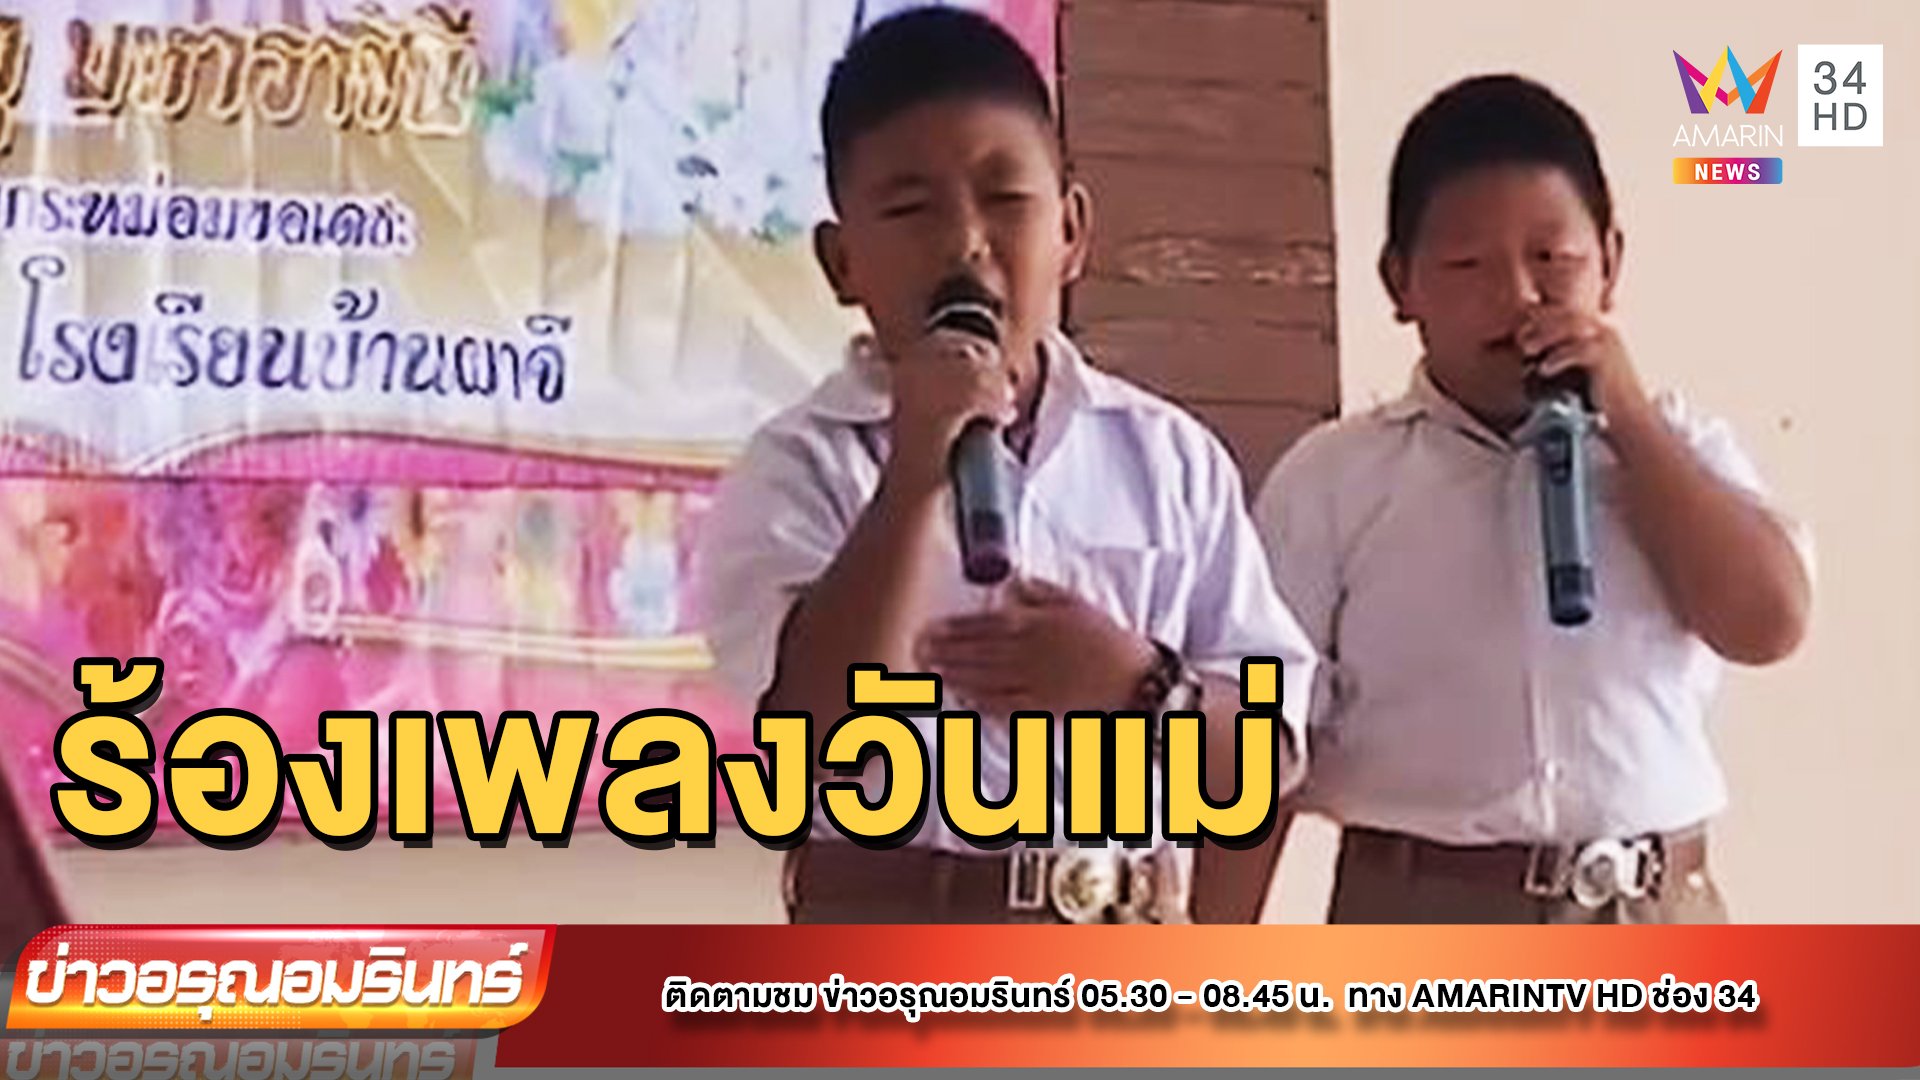 สุดซึ้ง! 2 หนุ่มร้องเพลงวันแม่ แต่เพื่อนร้องสู้ยิ่งกว่า | ข่าวอรุณอมรินทร์ | 12 ส.ค. 65 | AMARIN TVHD34